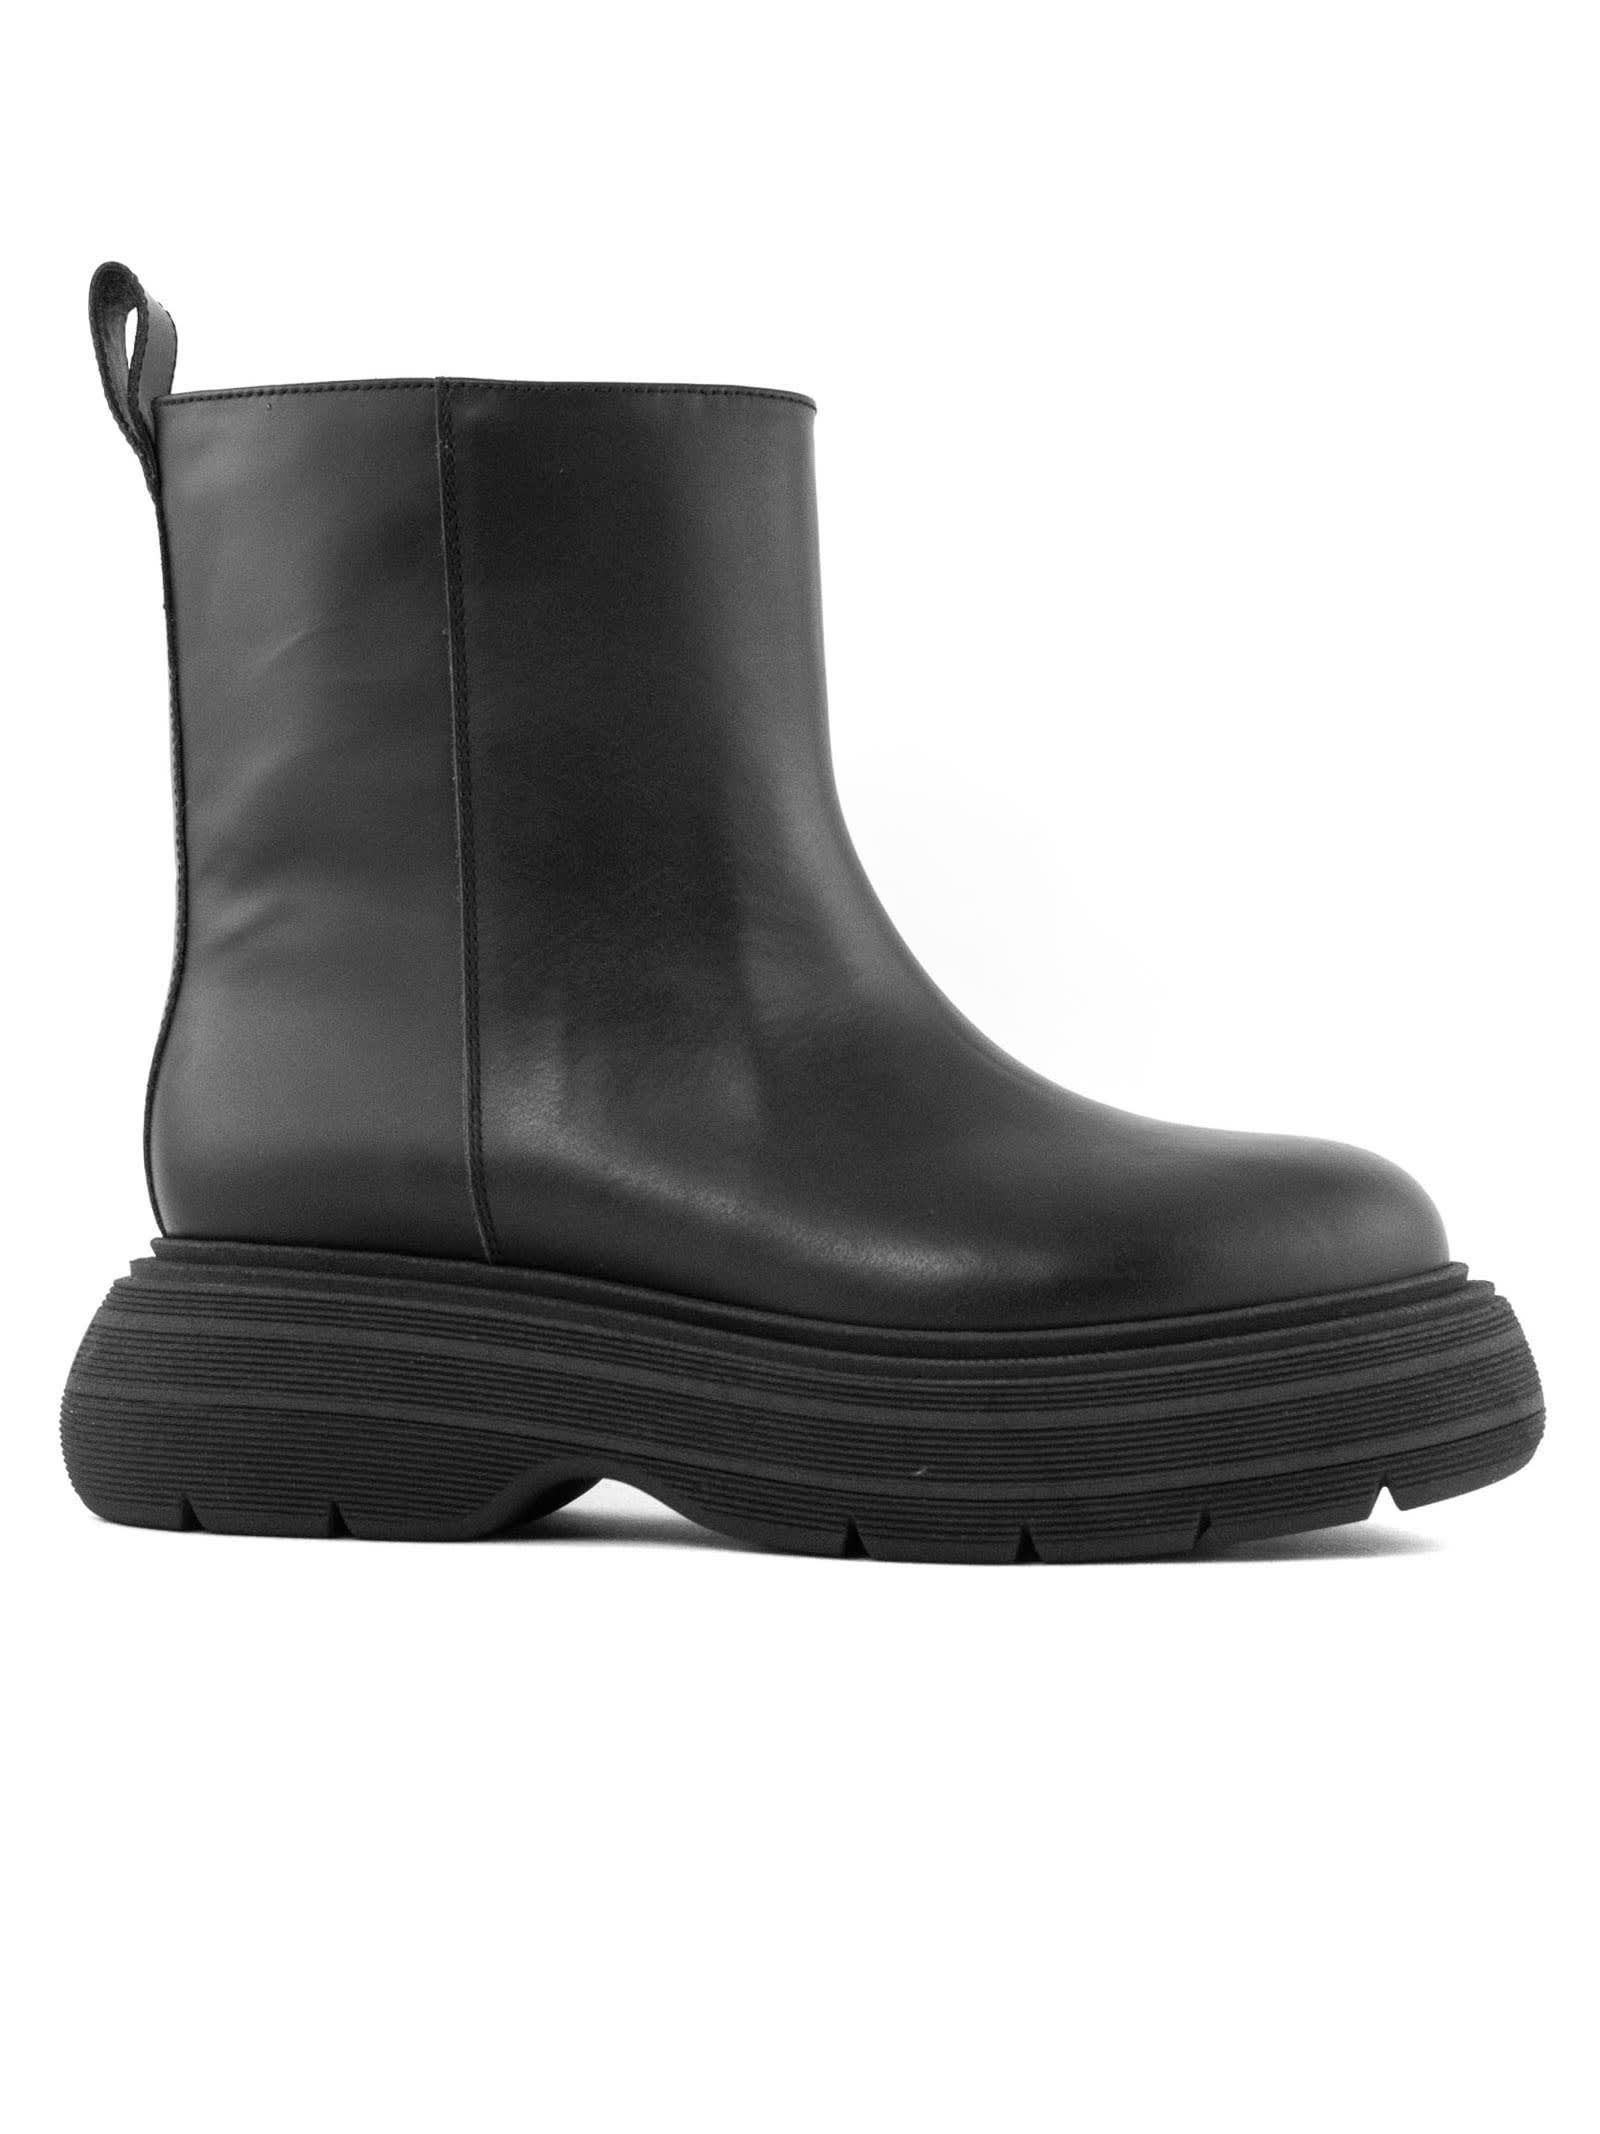 GIA BORGHINI Black Leather Martee Ankle Boots